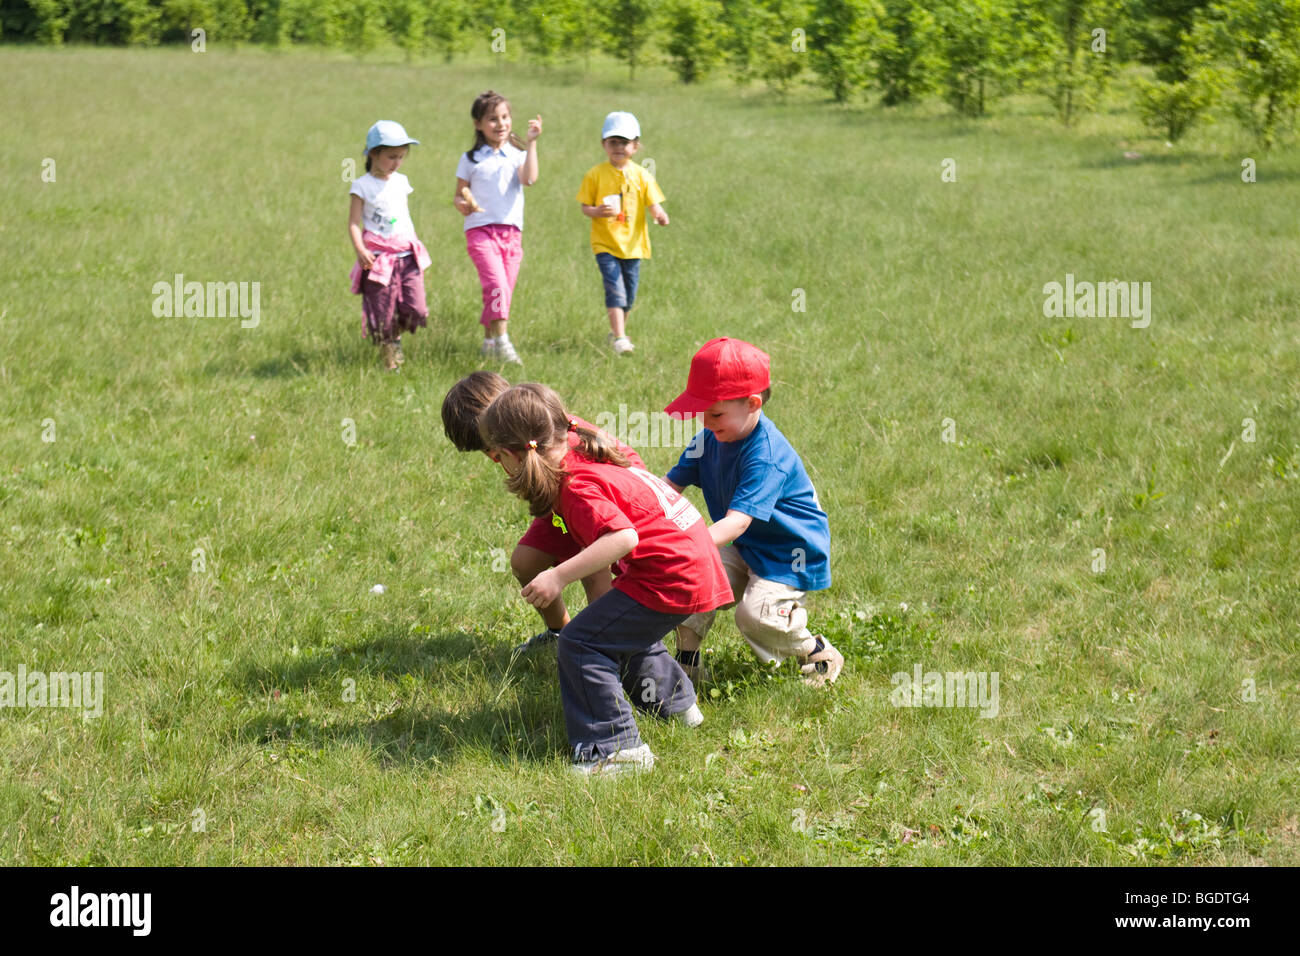 Niños jugando alegremente en un campo juntos Foto de stock